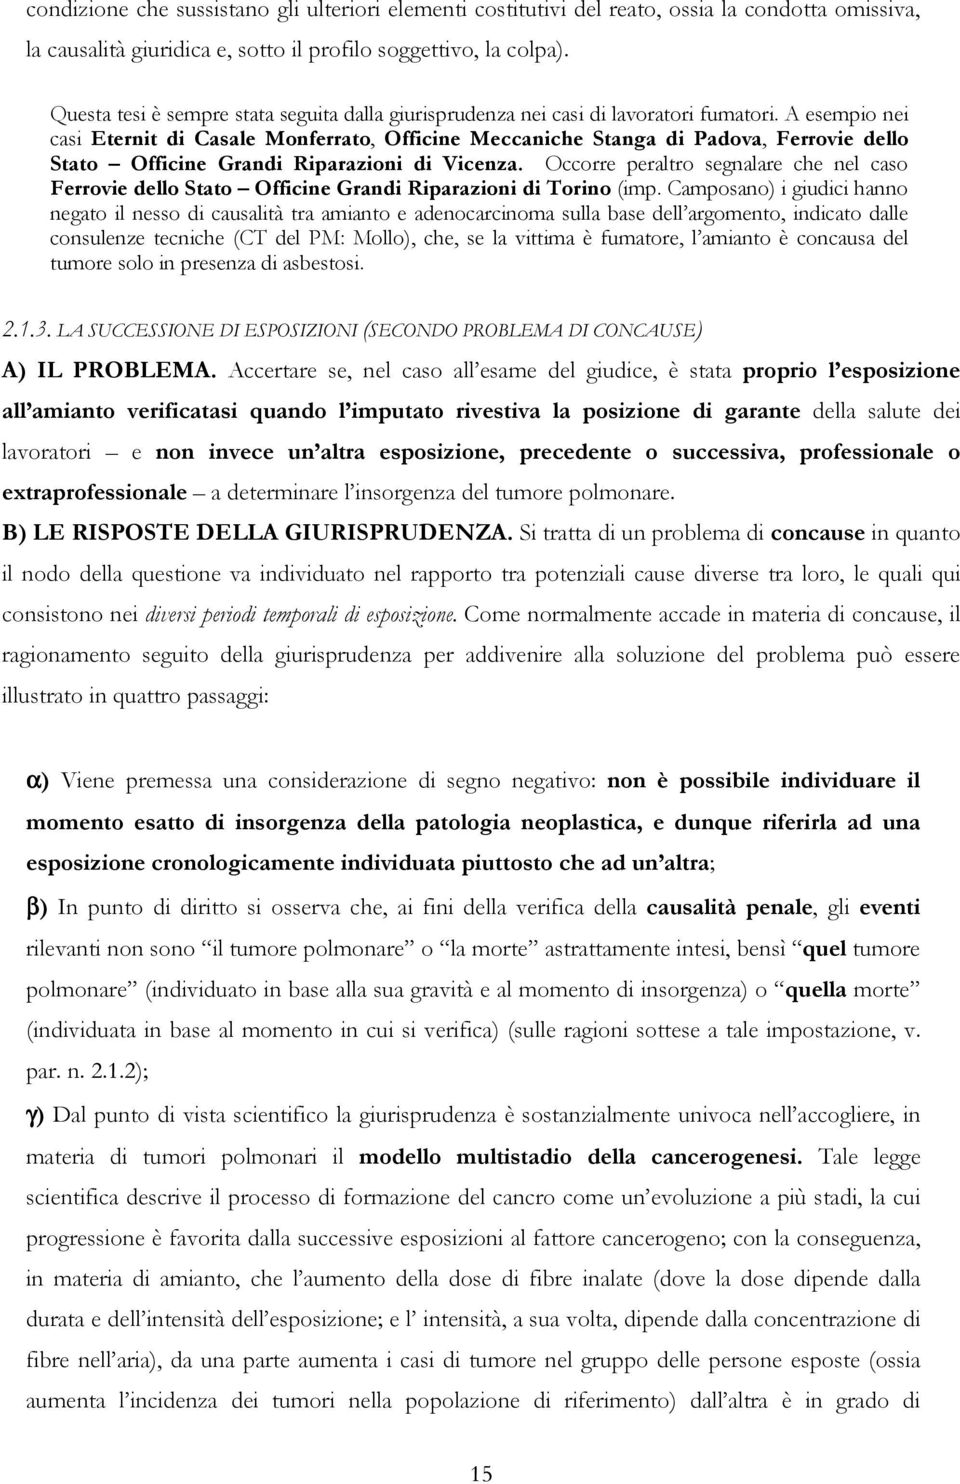 A esempio nei casi Eternit di Casale Monferrato, Officine Meccaniche Stanga di Padova, Ferrovie dello Stato Officine Grandi Riparazioni di Vicenza.